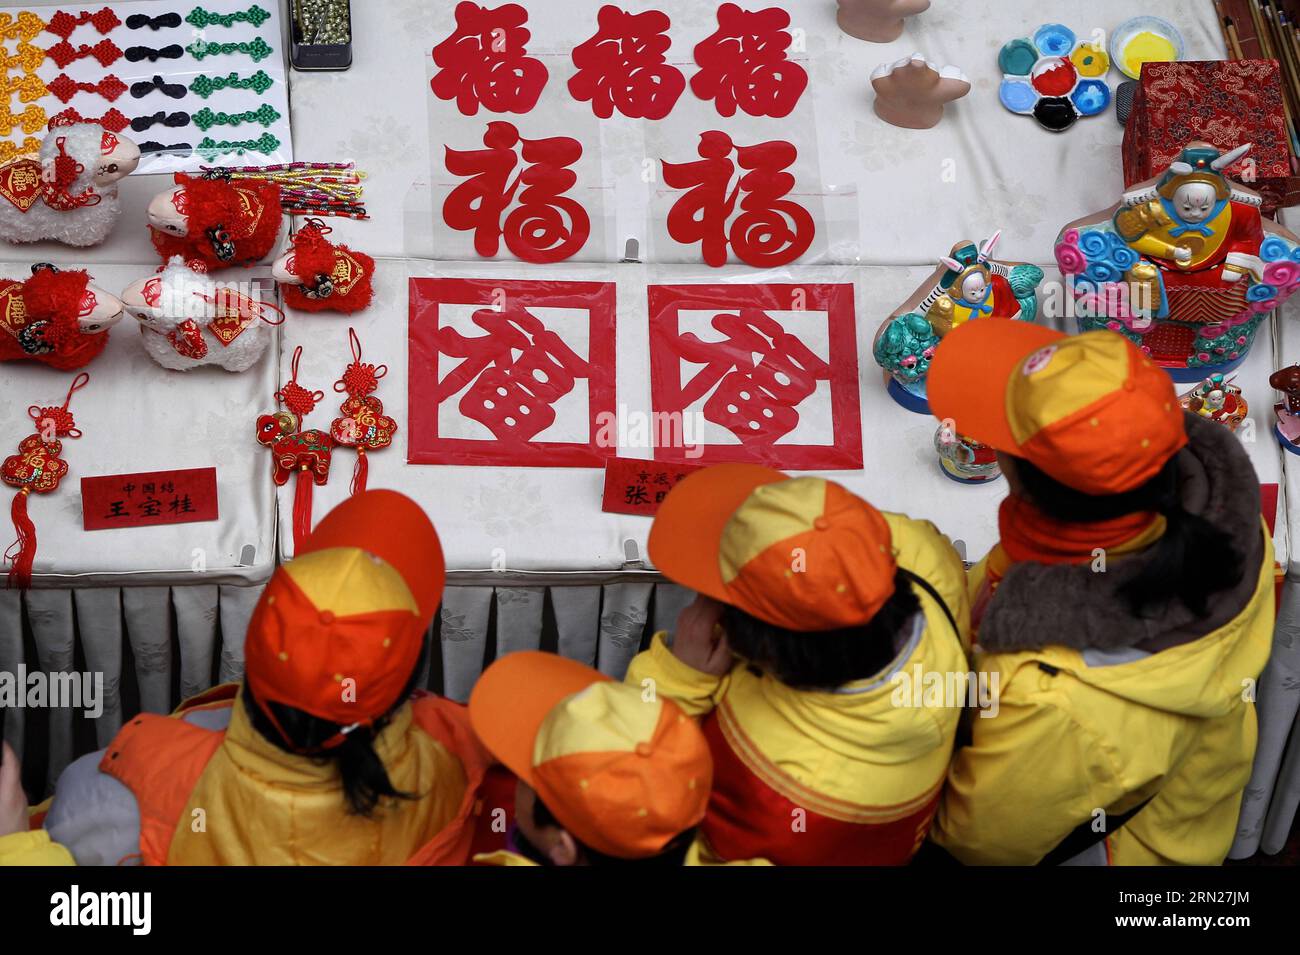 (150215) -- PEKING, 15. Februar 2015 -- Dorfbewohner sehen Papierschneidearbeiten mit chinesischem Charakter Fu, was viel Glück bedeutet, während einer Messe im Dorf Dagao, Bezirk Tongzhou, Peking, Hauptstadt von China, 15. Februar, 2015. mehr als 20.000 Kunstwerke, die von 60 Volkskünstlern aus Peking geschaffen wurden, wurden an die Dorfbewohner geschickt, um das bevorstehende Frühlingsfest zu begrüßen, das am 19. Februar dieses Jahres stattfindet. )(wyo) CHINA-BEIJING-TEMPLE FAIR-FOLK ART (CN) GaoxJing PUBLICATIONxNOTxINxCHN Peking 15. Februar 2015 Dorfbewohner sehen Papierschneidearbeiten mit chinesischem Charakter Fu Bedeutung viel Glück während einer Messe im Dorf Dagao Tong ZH Stockfoto